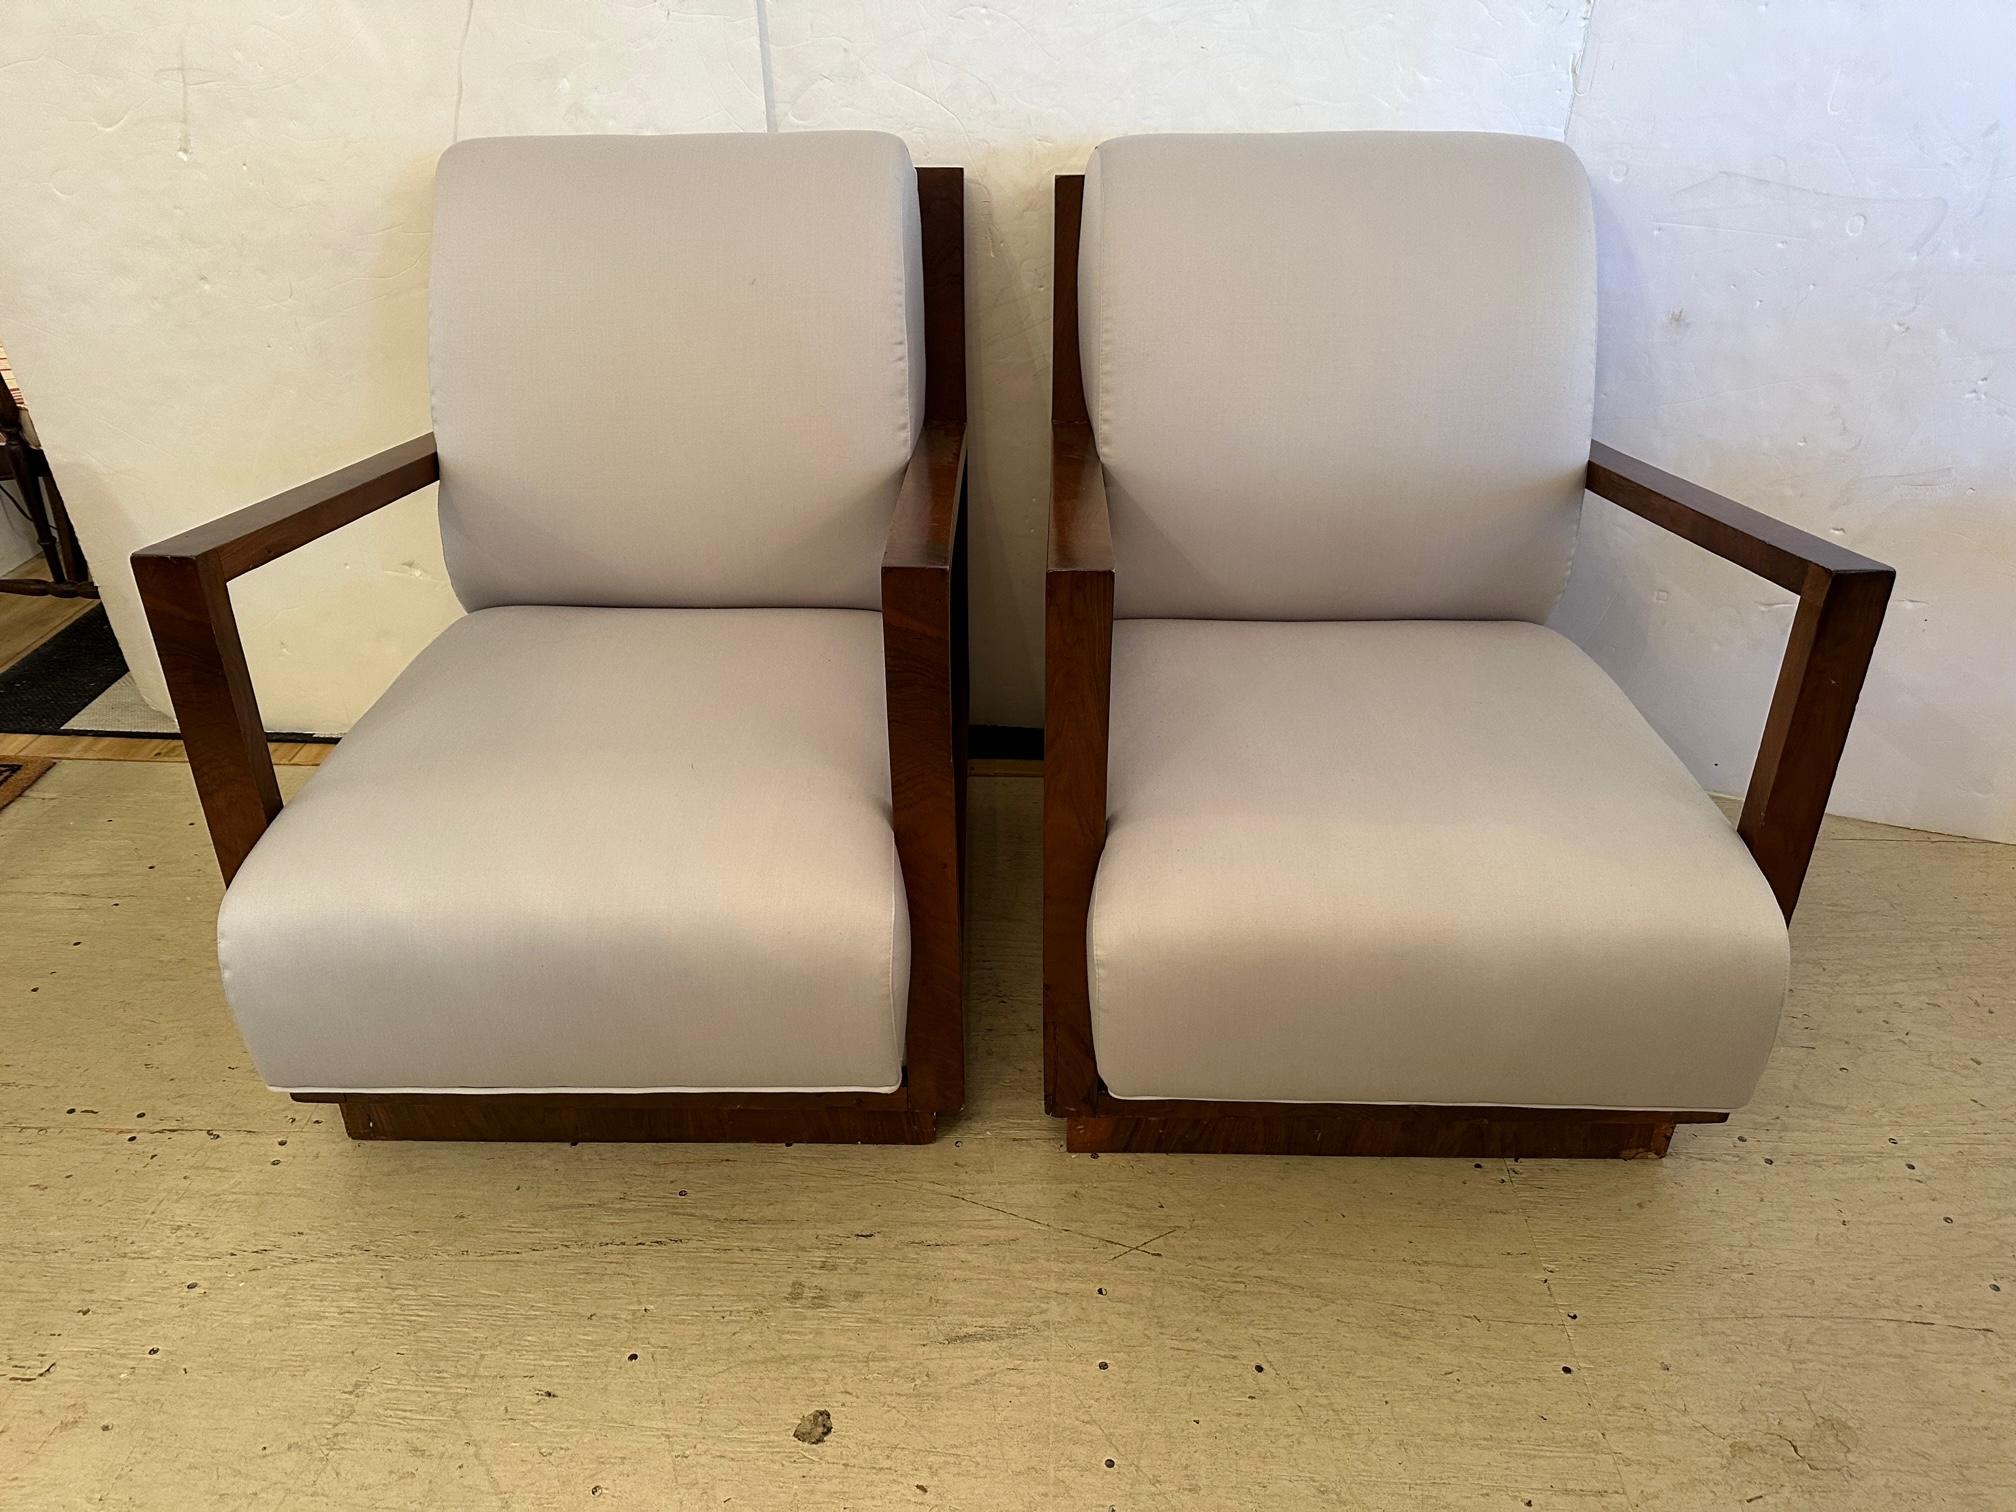 Zwei große, elegante französische Art Deco Stühle mit wunderschön gemaserten Mahagoni-Rahmen, besonders schön von der Rückseite, vor kurzem gepolstert in neutraler grauer (graubeiger) Baumwollmischung.

Arm: 24